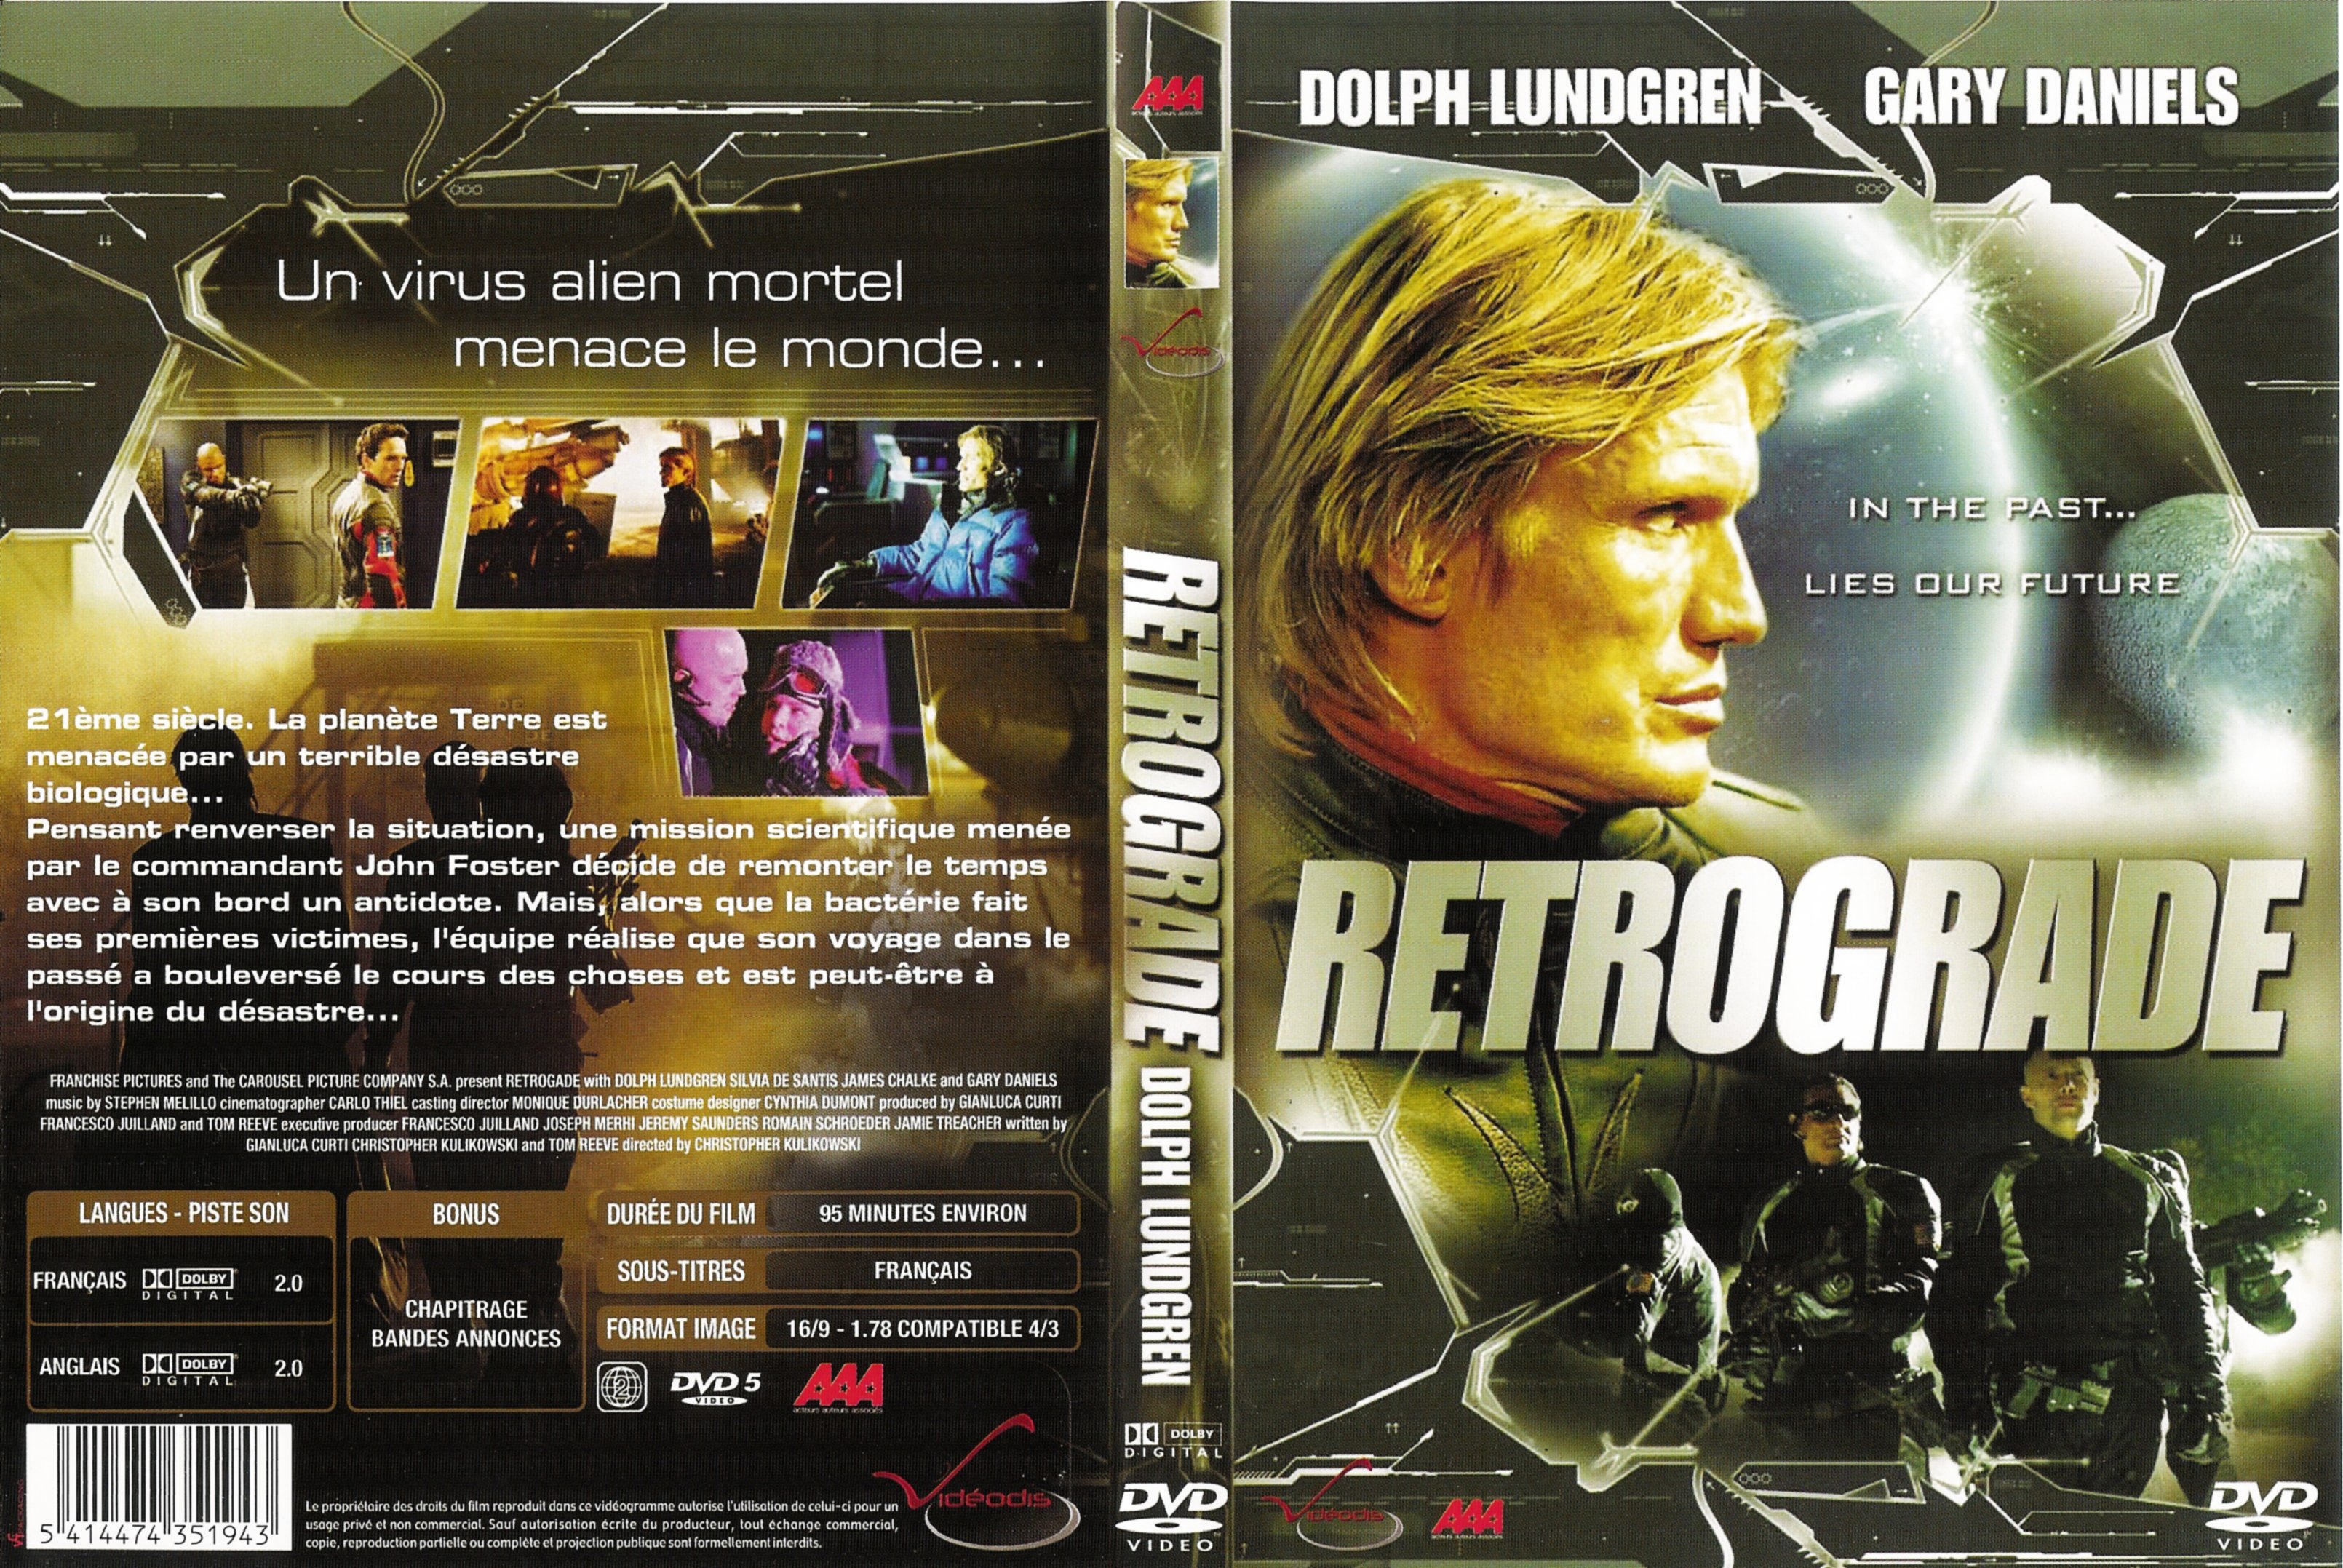 Jaquette DVD Retrograde v2